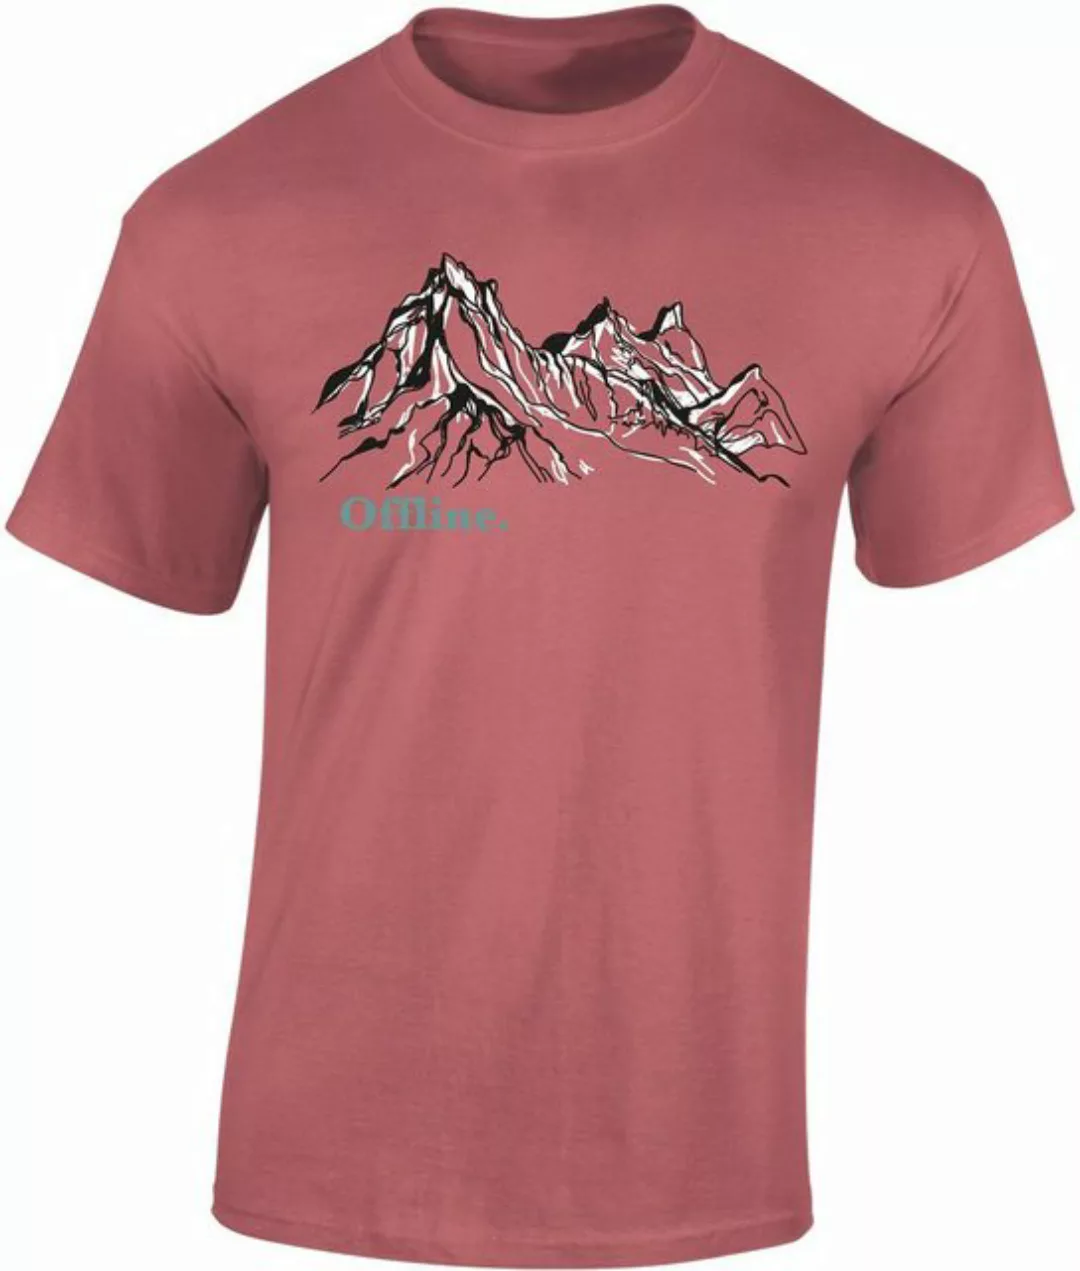 Baddery Print-Shirt Wander Tshirt : "Offline" - Kletter T-Shirt für Wanderf günstig online kaufen